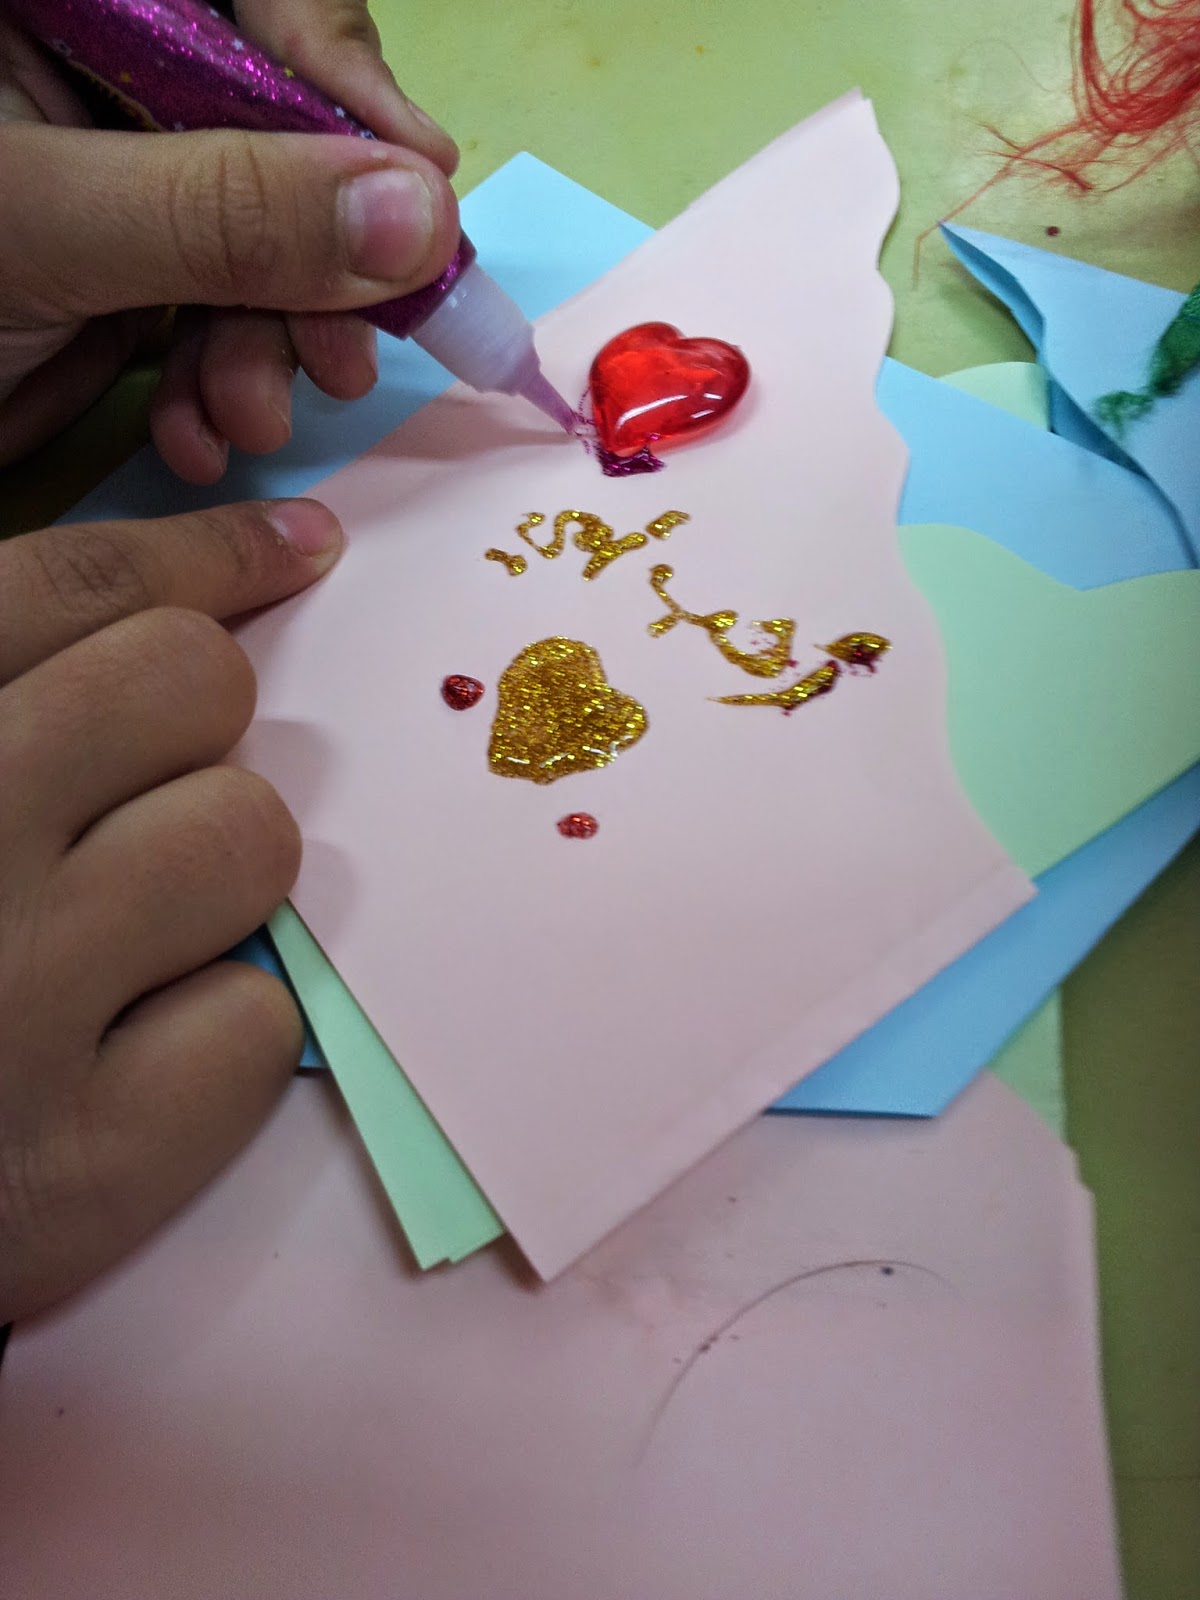 مدونة الفنية ورشة عمل عن عيد الام وعمل بطاقة دعوة